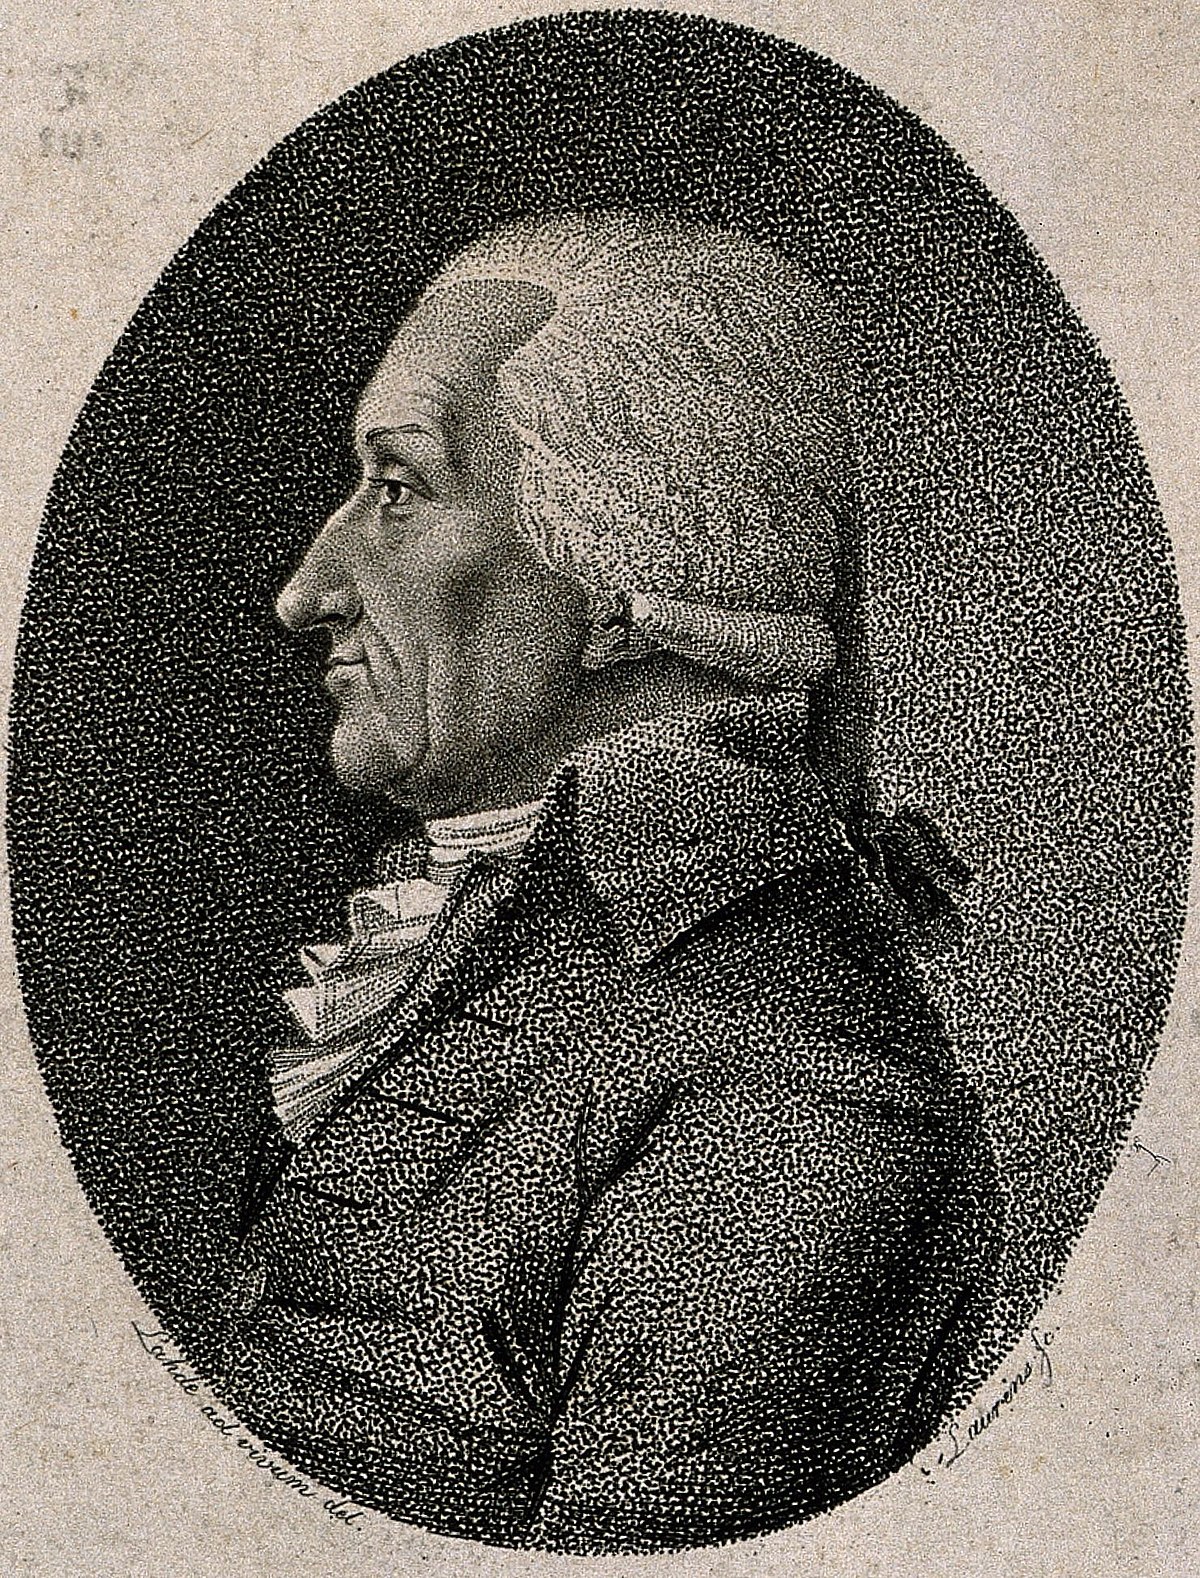 Johann Tetens as a forerunner of German positivism